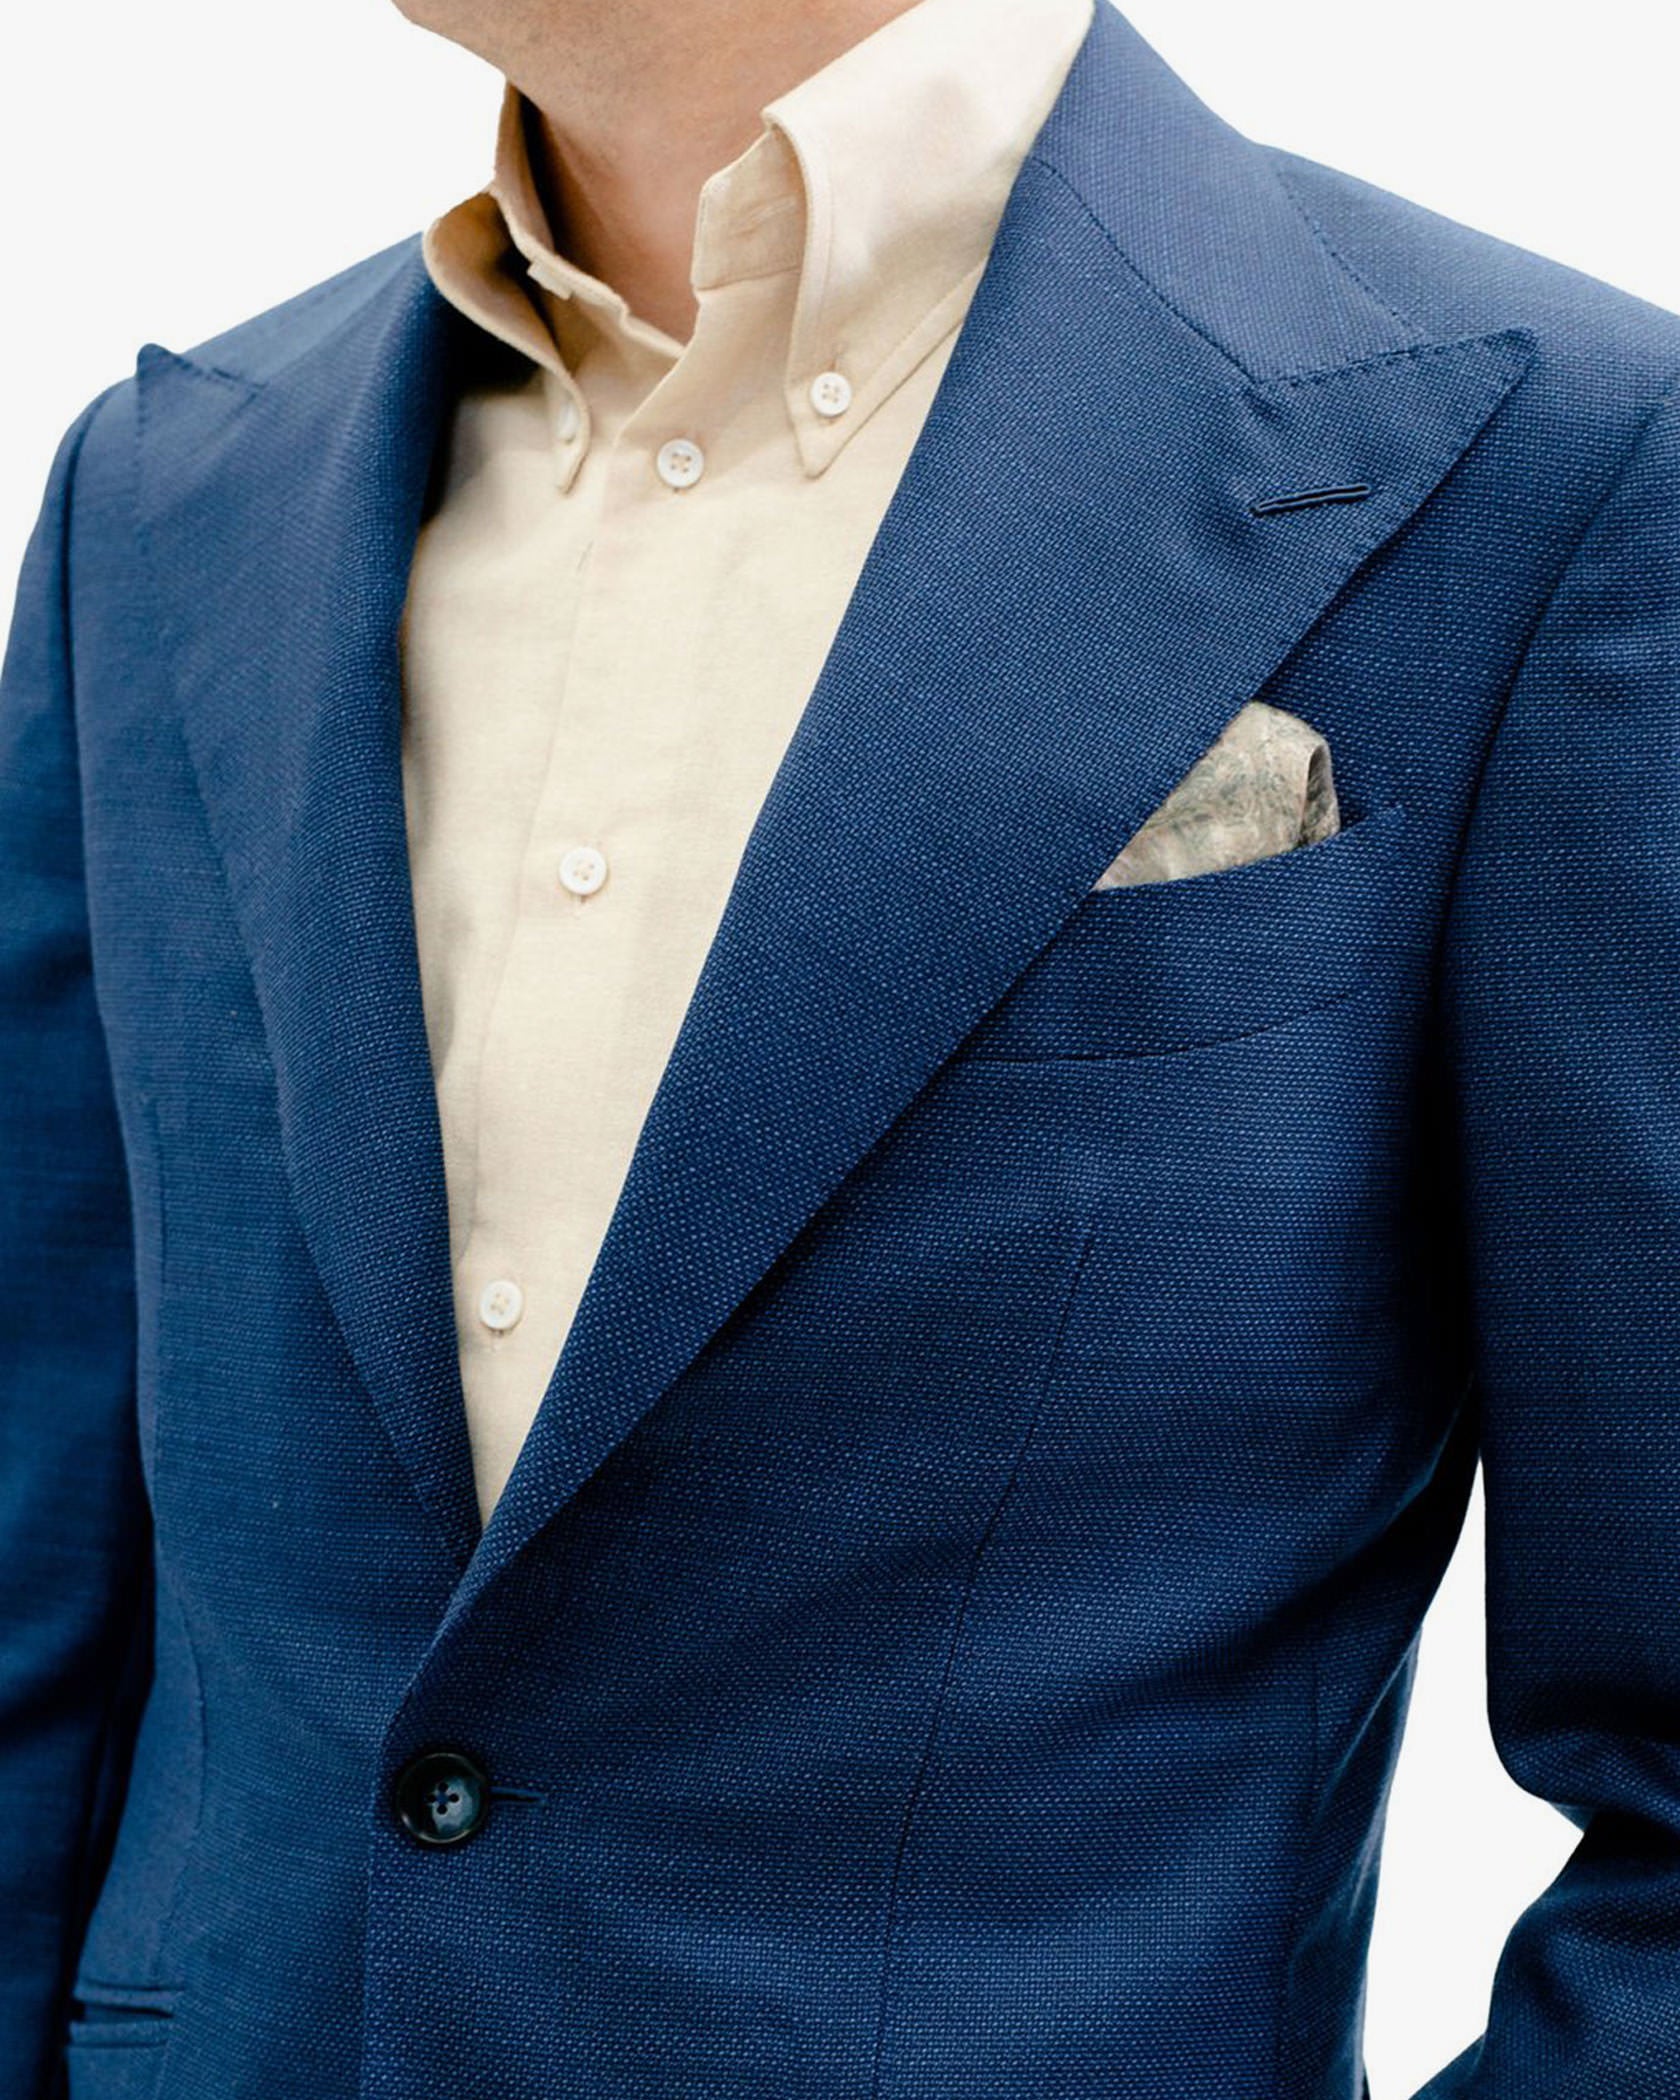 The Standard Royal Blue Suit